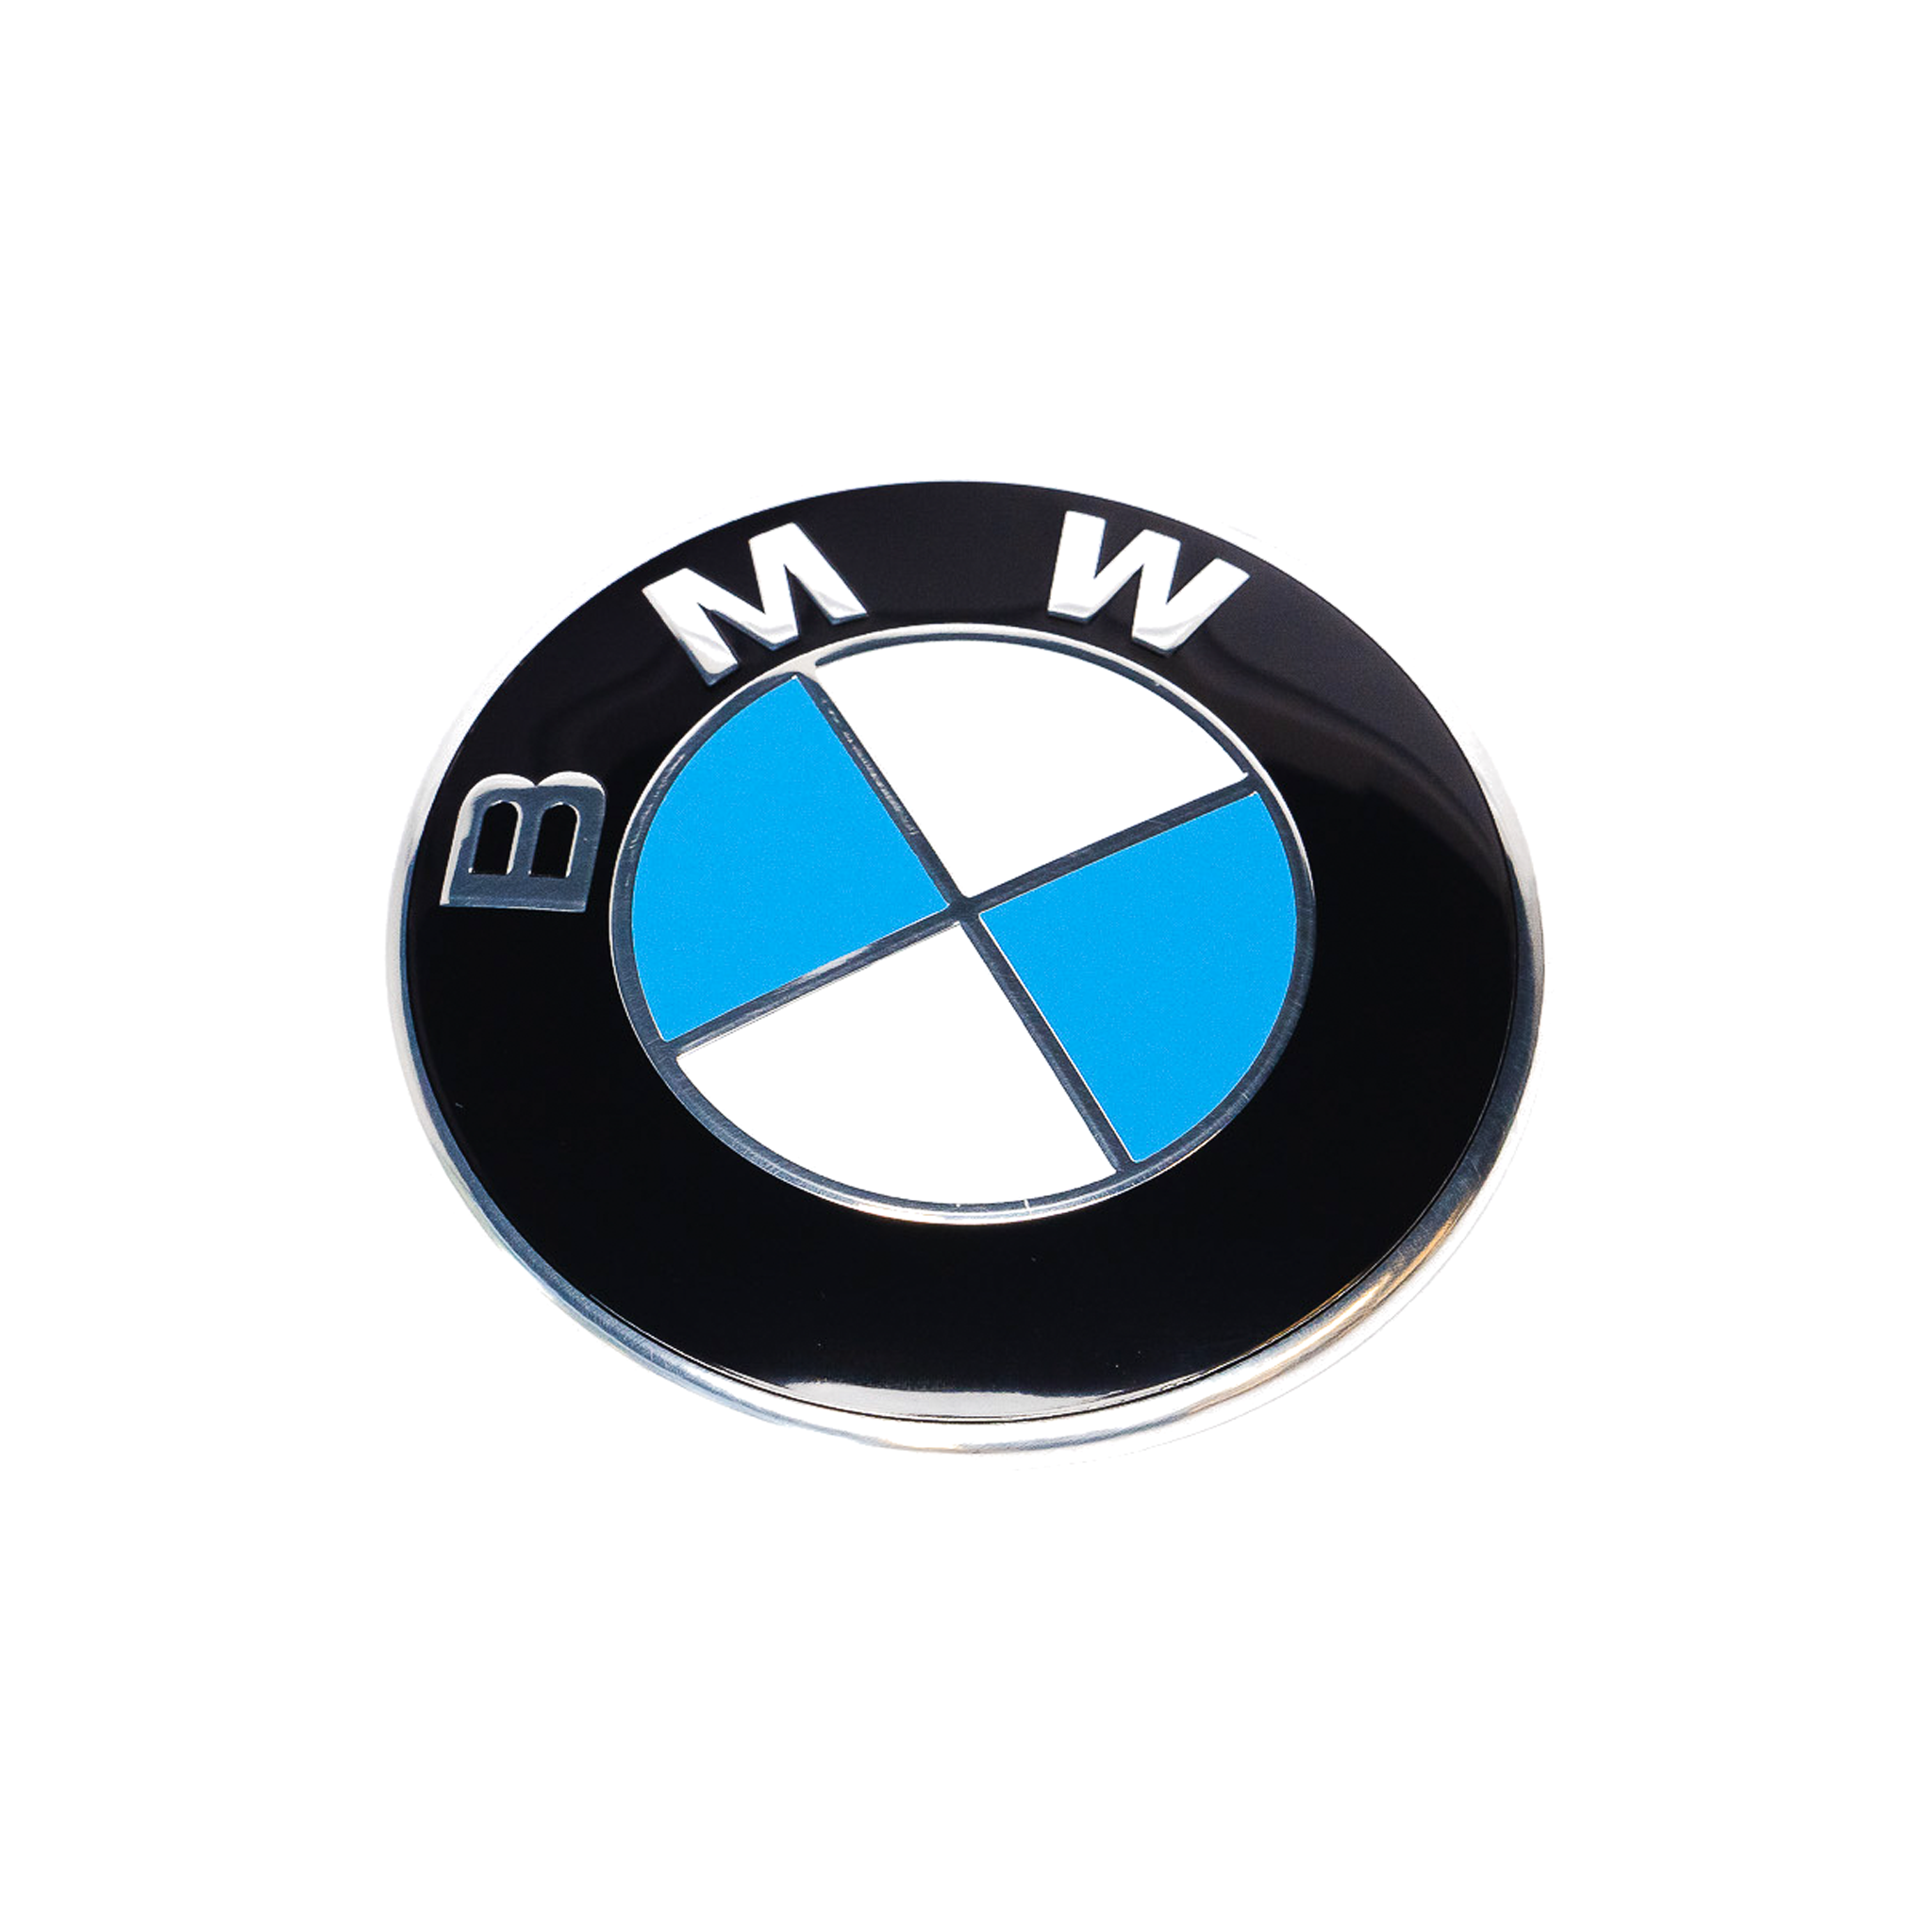 Exon BMW Style Blue / White Front Badge Emblem 82mm for BMW F-Series M2 F87 M3 F80 M4 F82 & 1 2 3 4 Series F20 F22 F30 F32